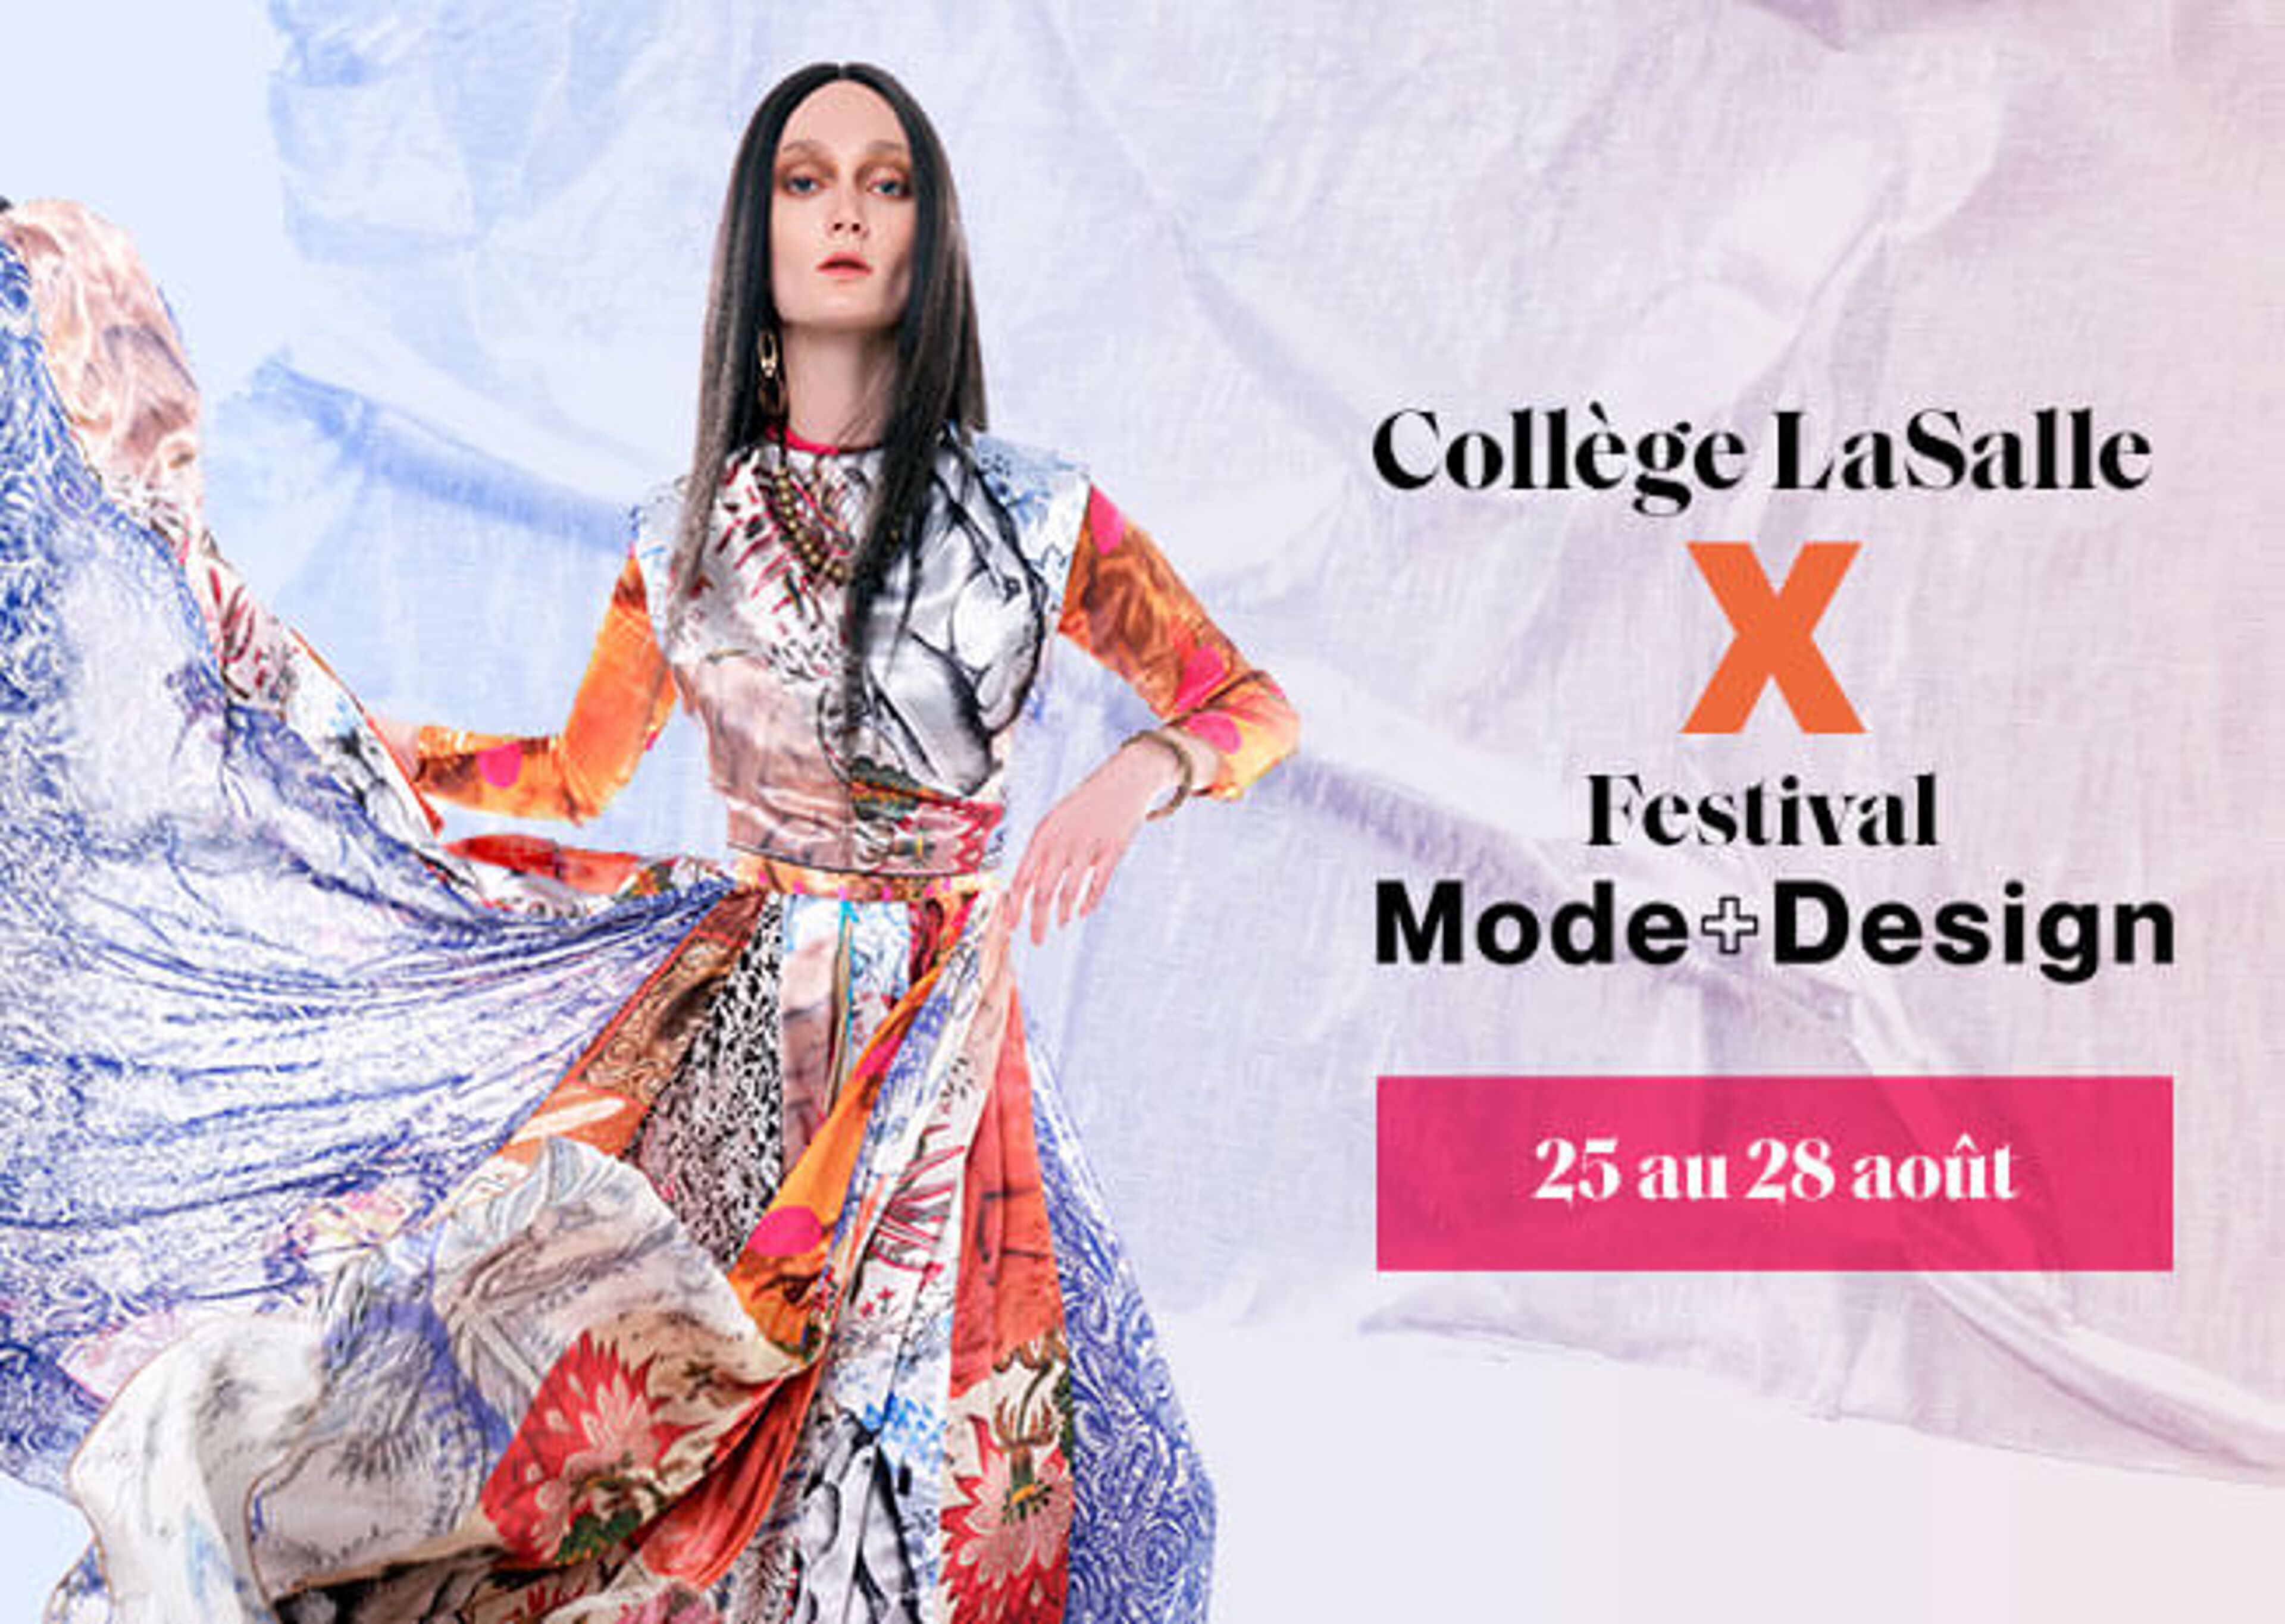  Le Collège LaSalle s'associe avec le Festival Mode+Design pour un événement célébrant la mode, prévu pour le 25-28 août.